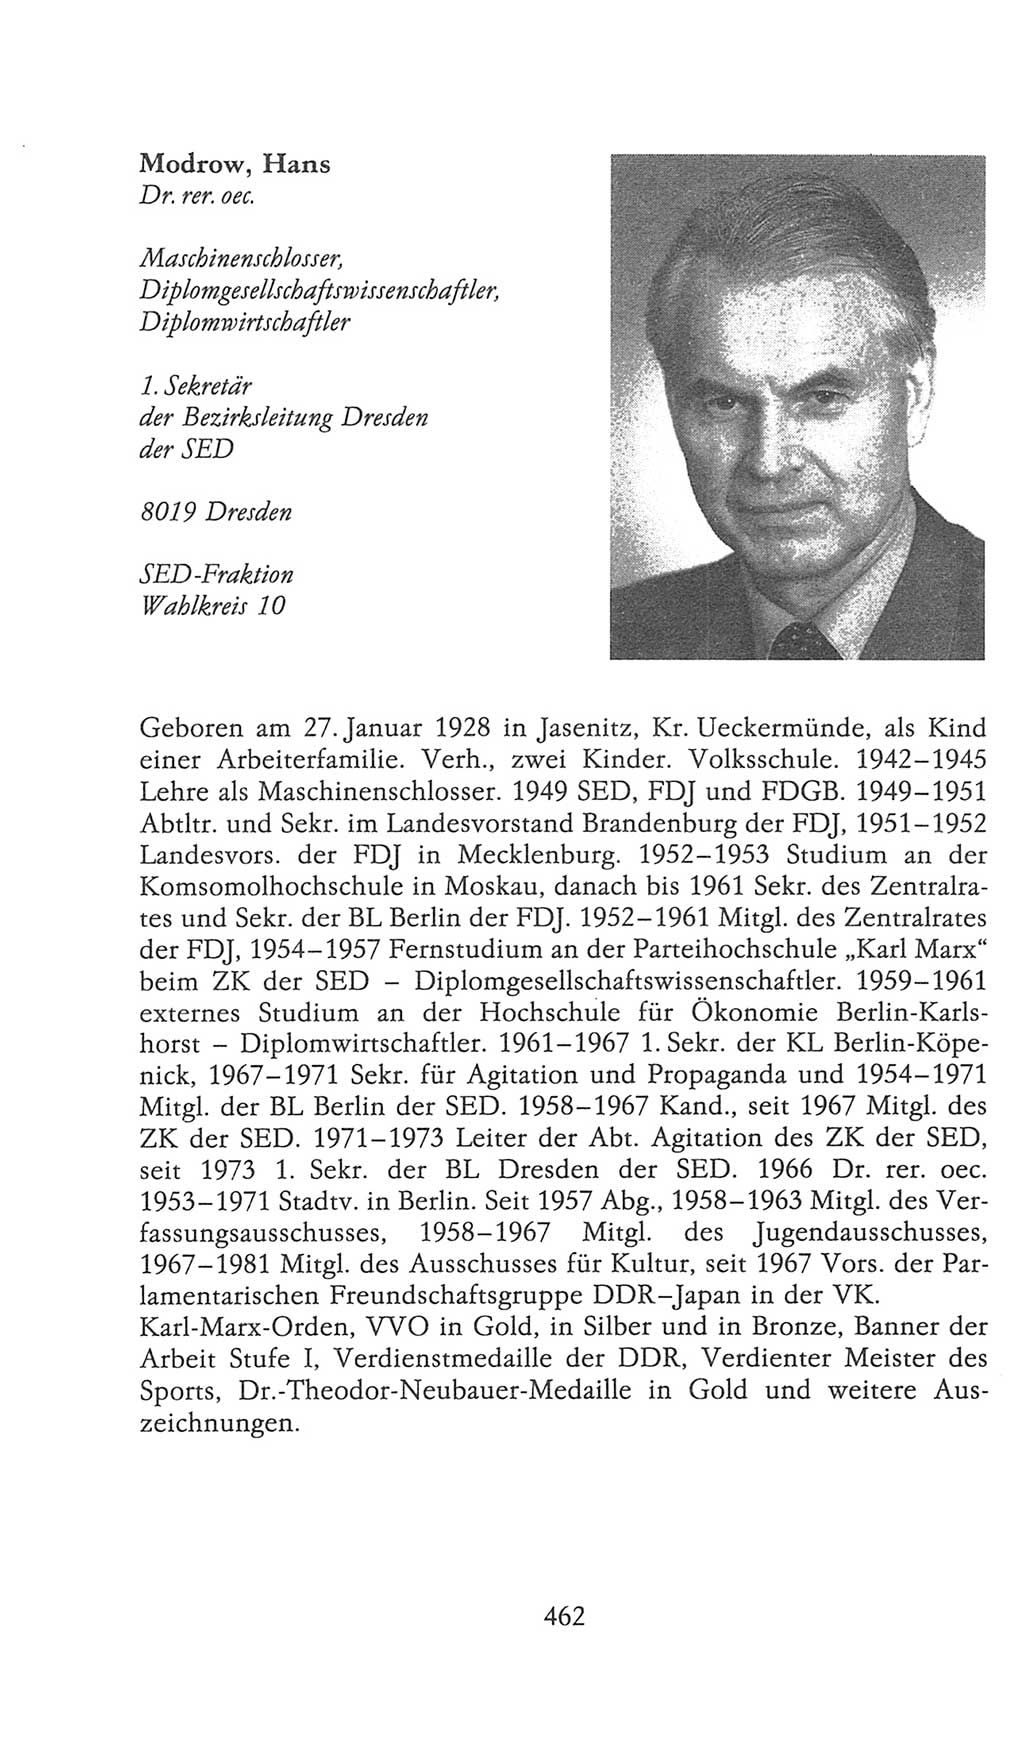 Volkskammer (VK) der Deutschen Demokratischen Republik (DDR), 9. Wahlperiode 1986-1990, Seite 462 (VK. DDR 9. WP. 1986-1990, S. 462)